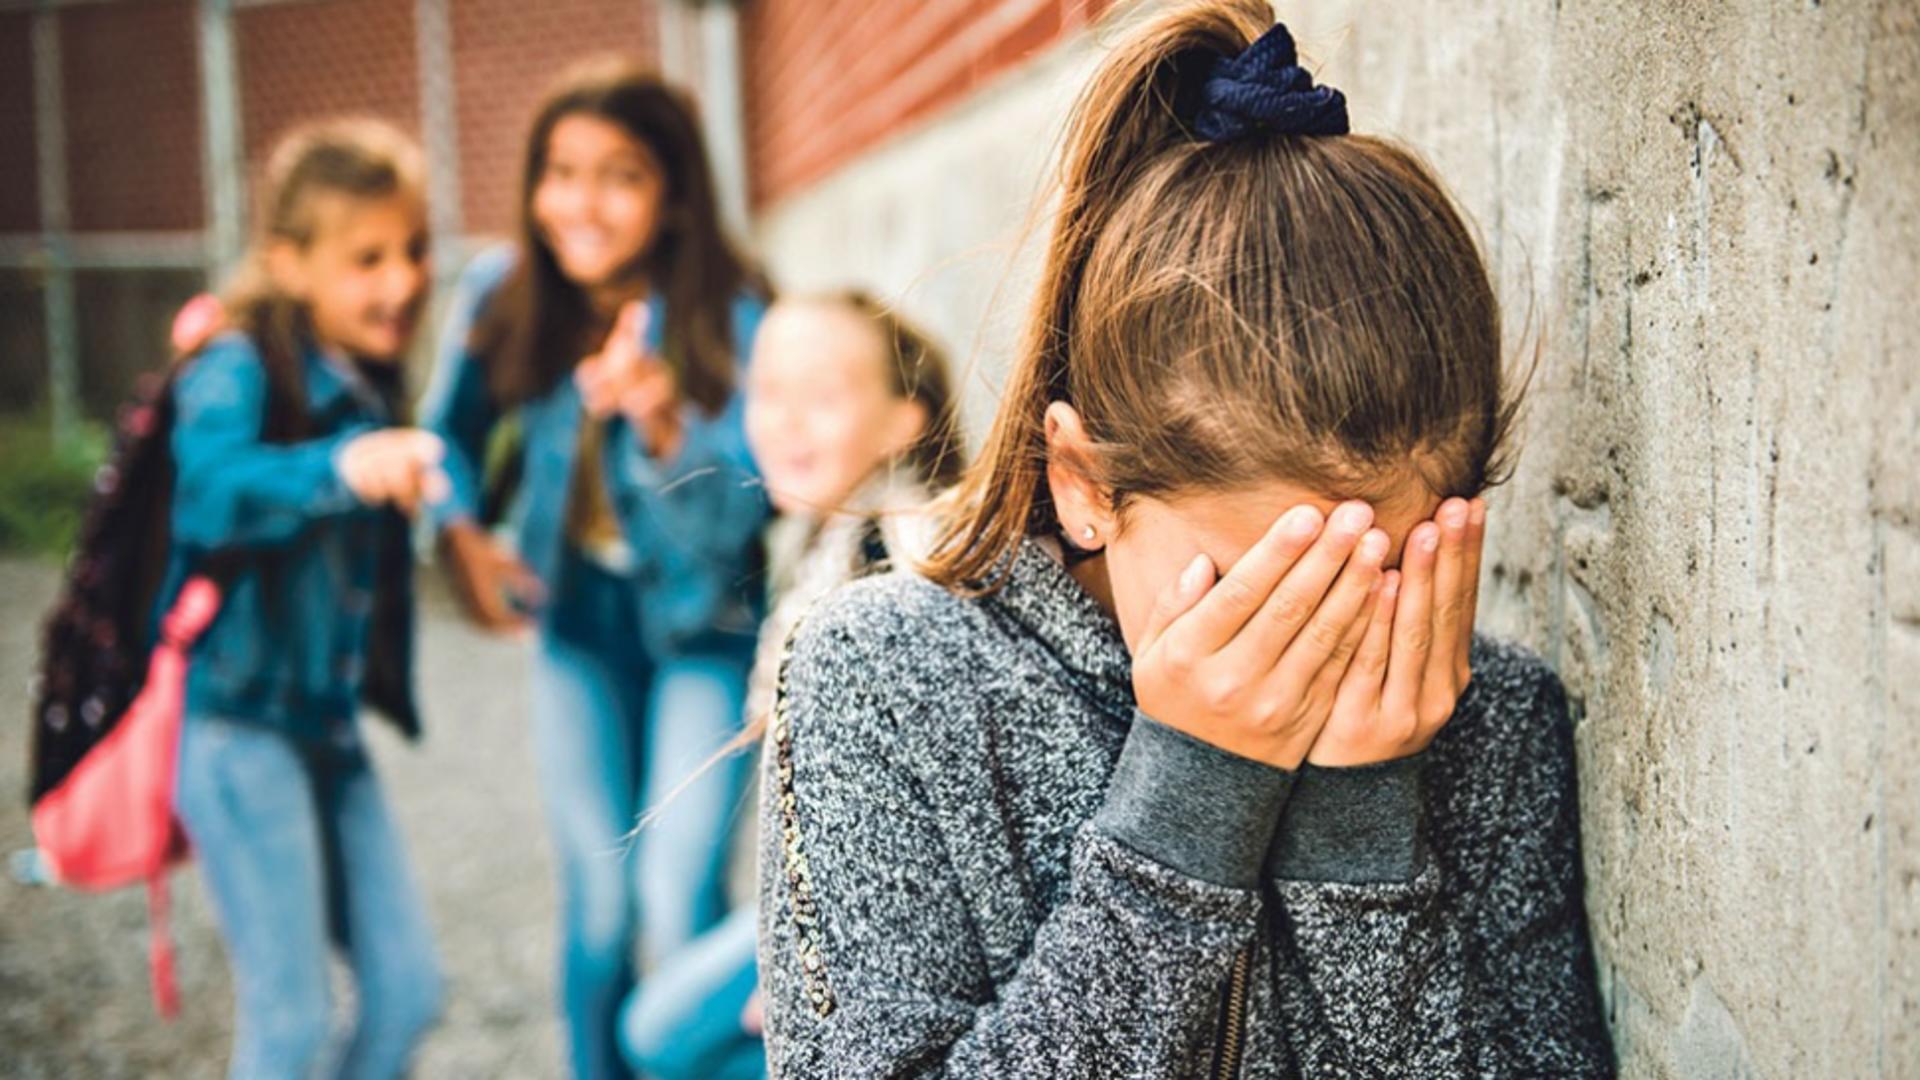 DRAMELE copiilor amenințați - Campanie VIRALĂ. Fenomenul de bullying în România, la cote ALARMANTE